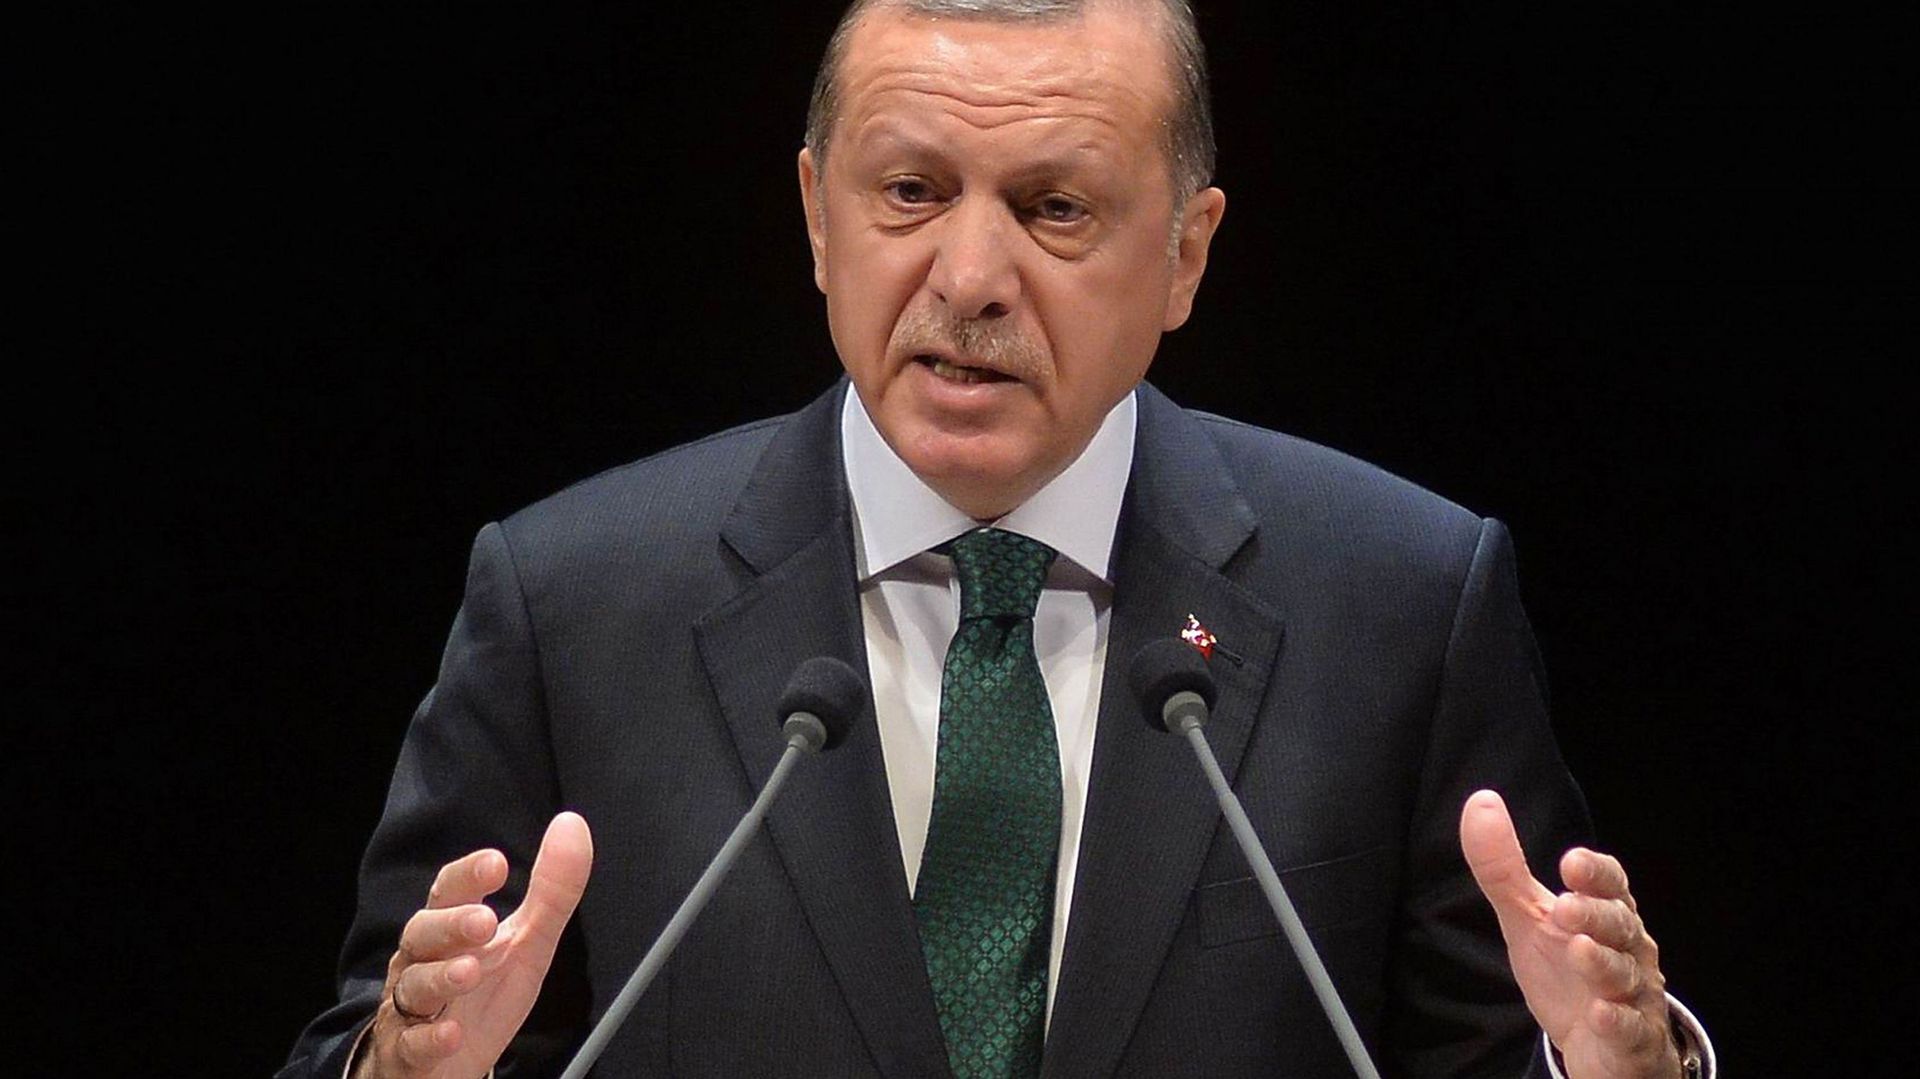 Turquie: le renforcement du pouvoir présidentiel bientôt soumis au Parlement